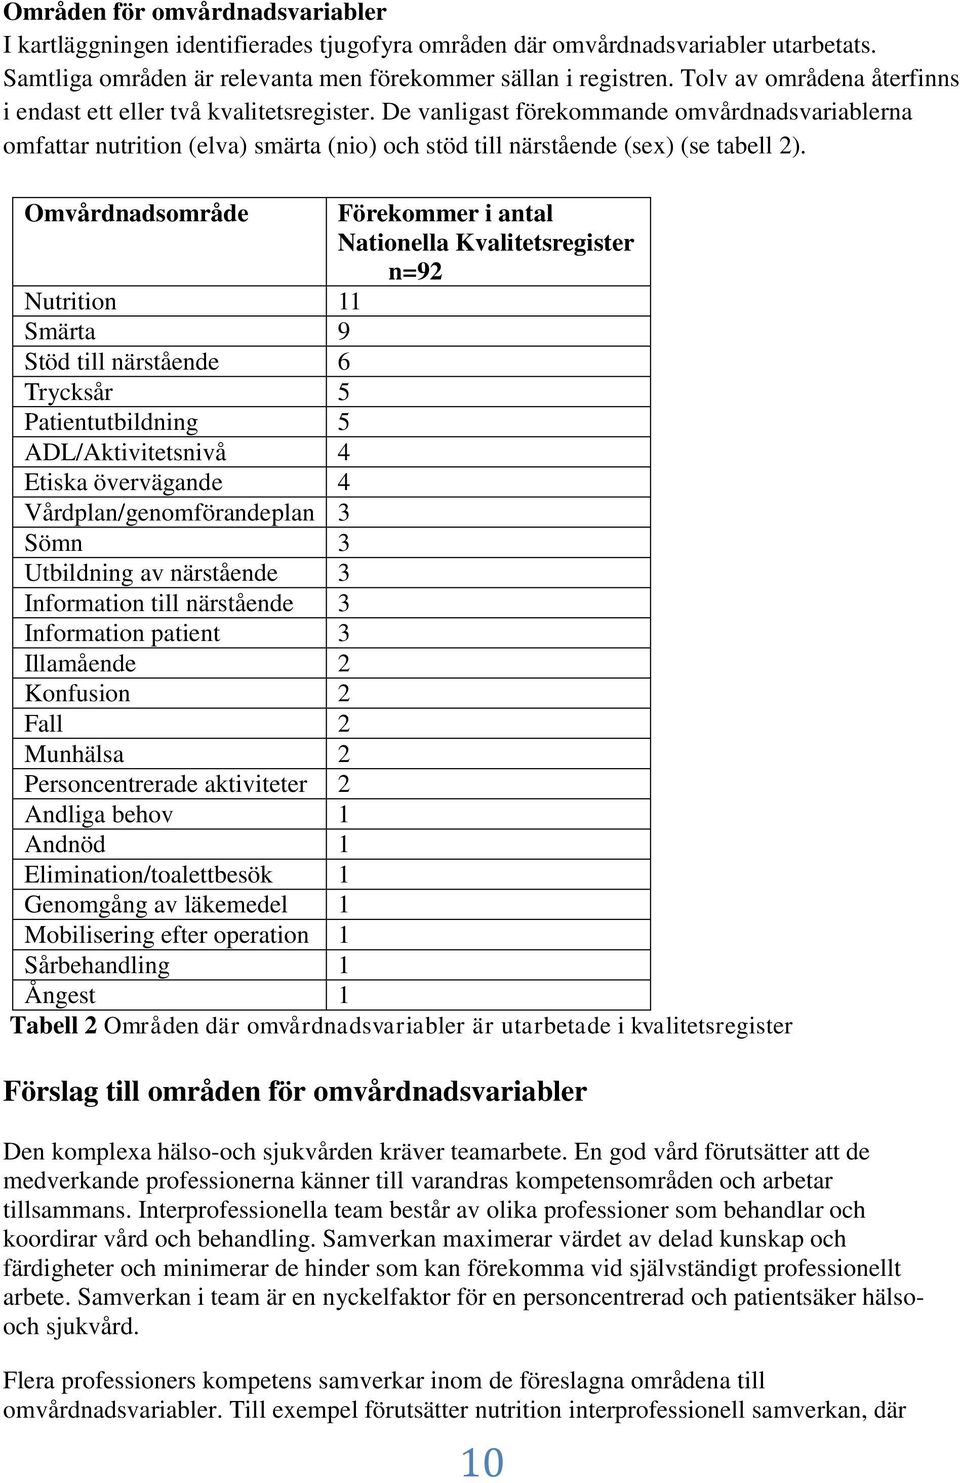 De vanligast förekommande omvårdnadsvariablerna omfattar nutrition (elva) smärta (nio) och stöd till närstående (sex) (se tabell 2).